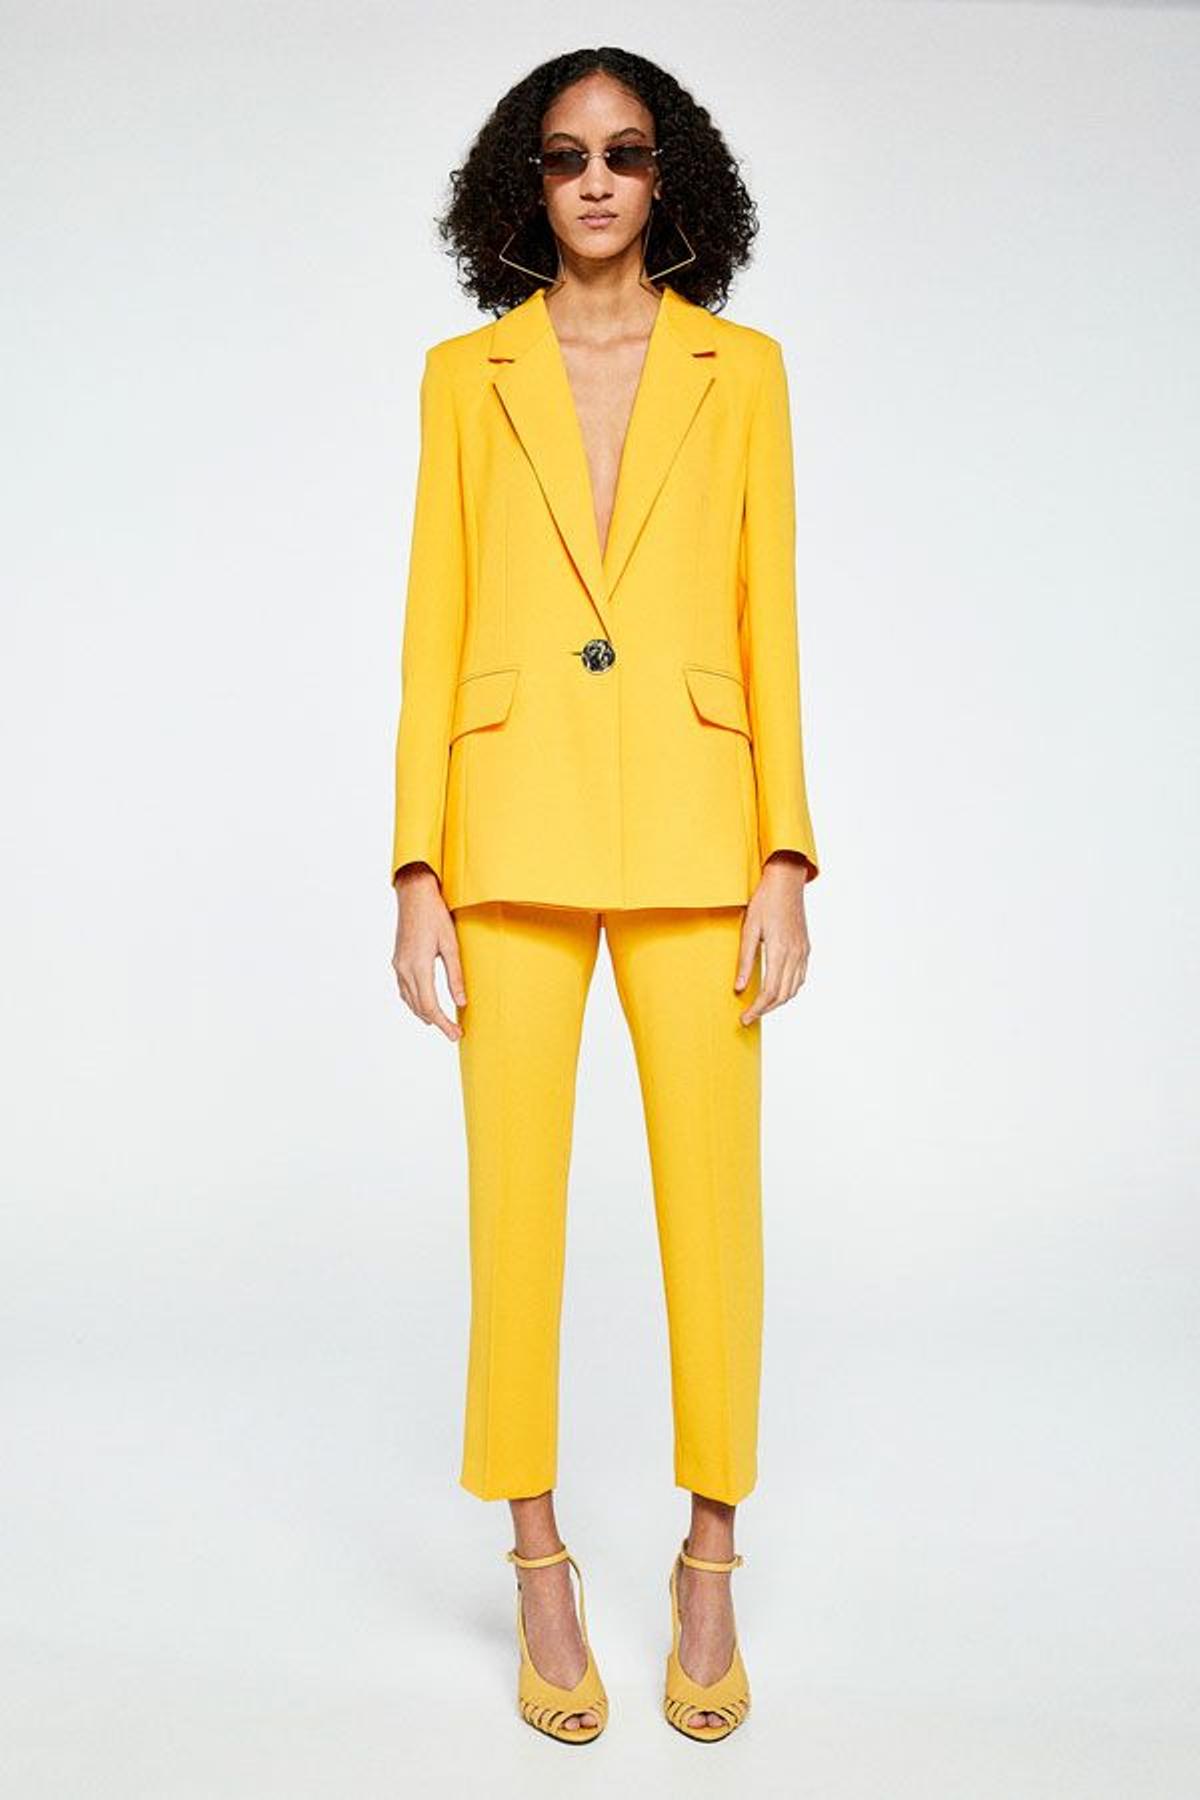 El traje amarillo es el nuevo look viral acabarás queriendo uno - Woman